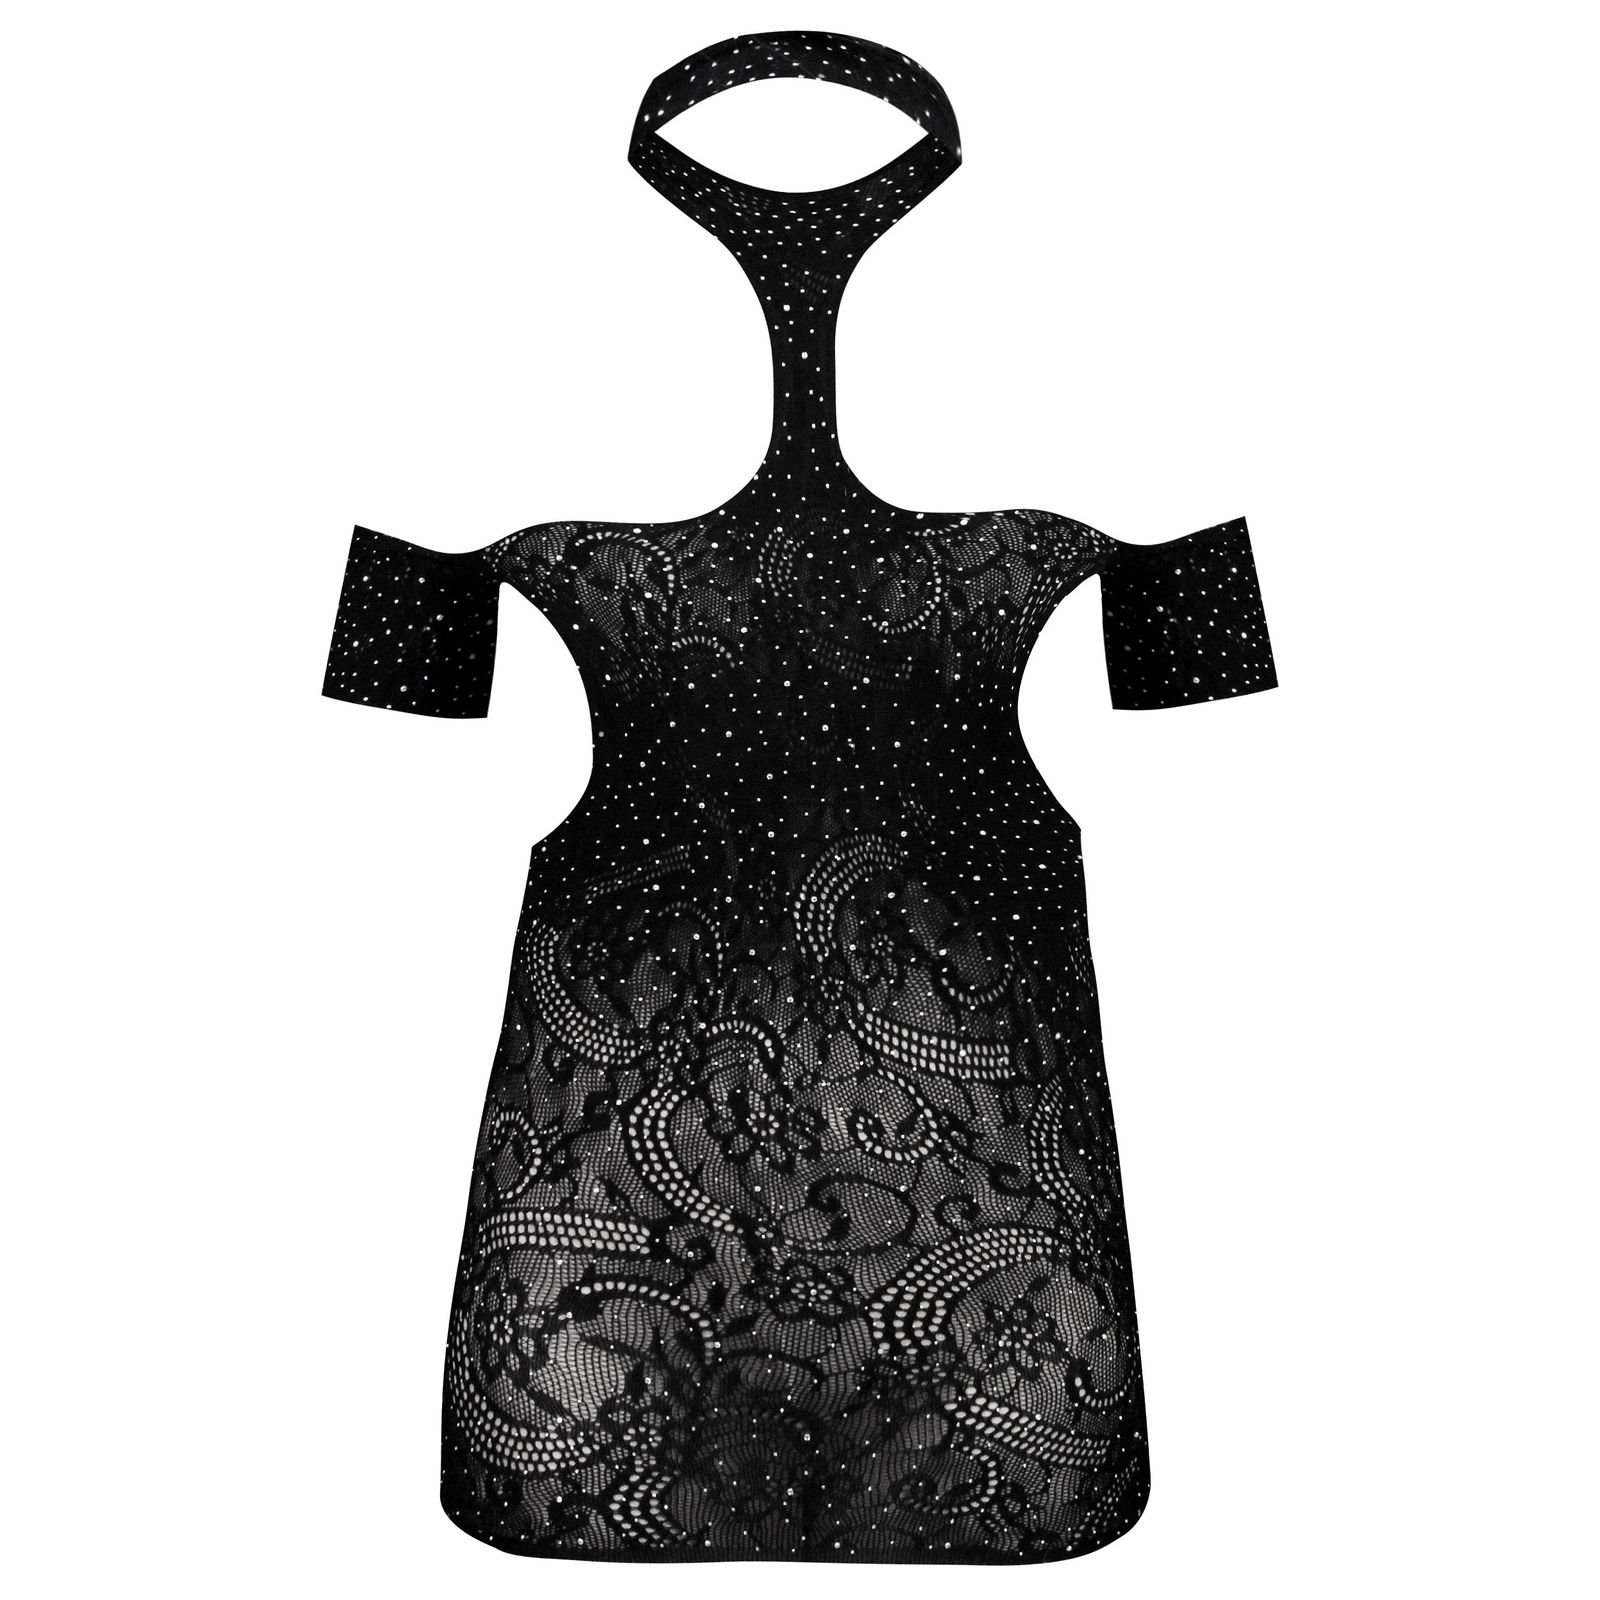 لباس خواب زنانه ماییلدا مدل نگین دار فانتزی کد 4860-7185 رنگ مشکی -  - 2